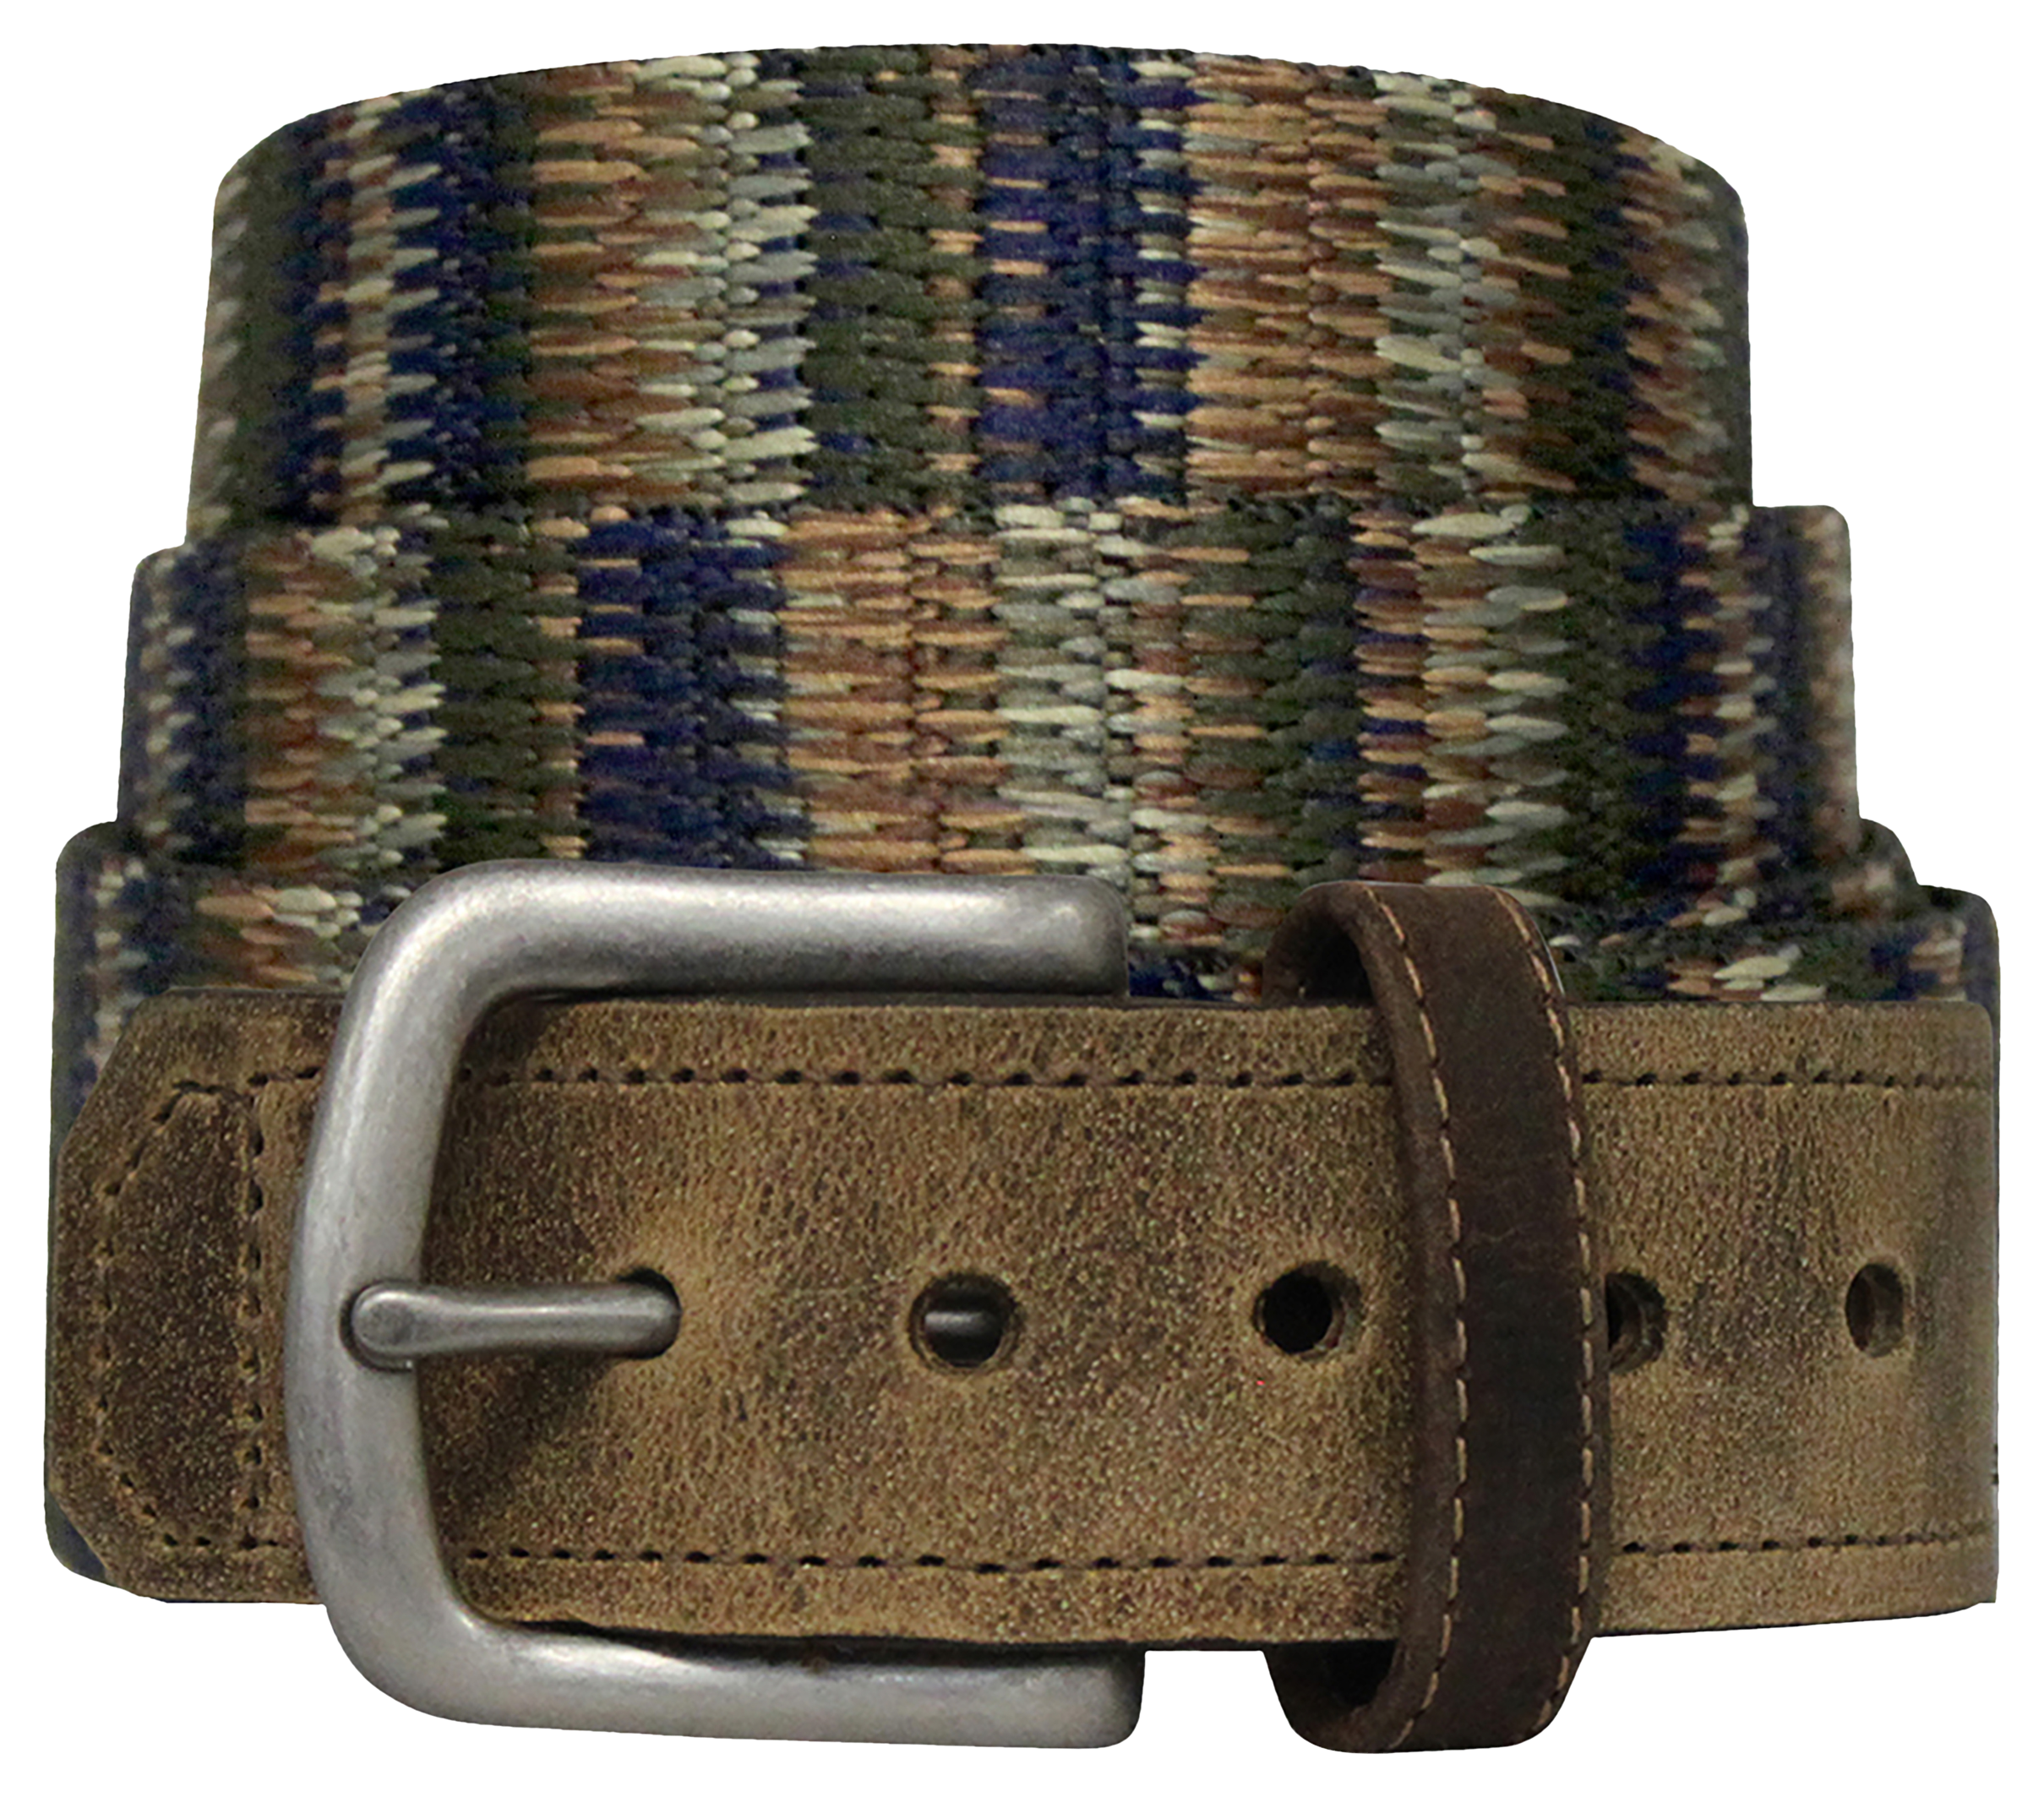 Bison Designs Pontoon Leather Tip Belt for Men - Coyote - 36